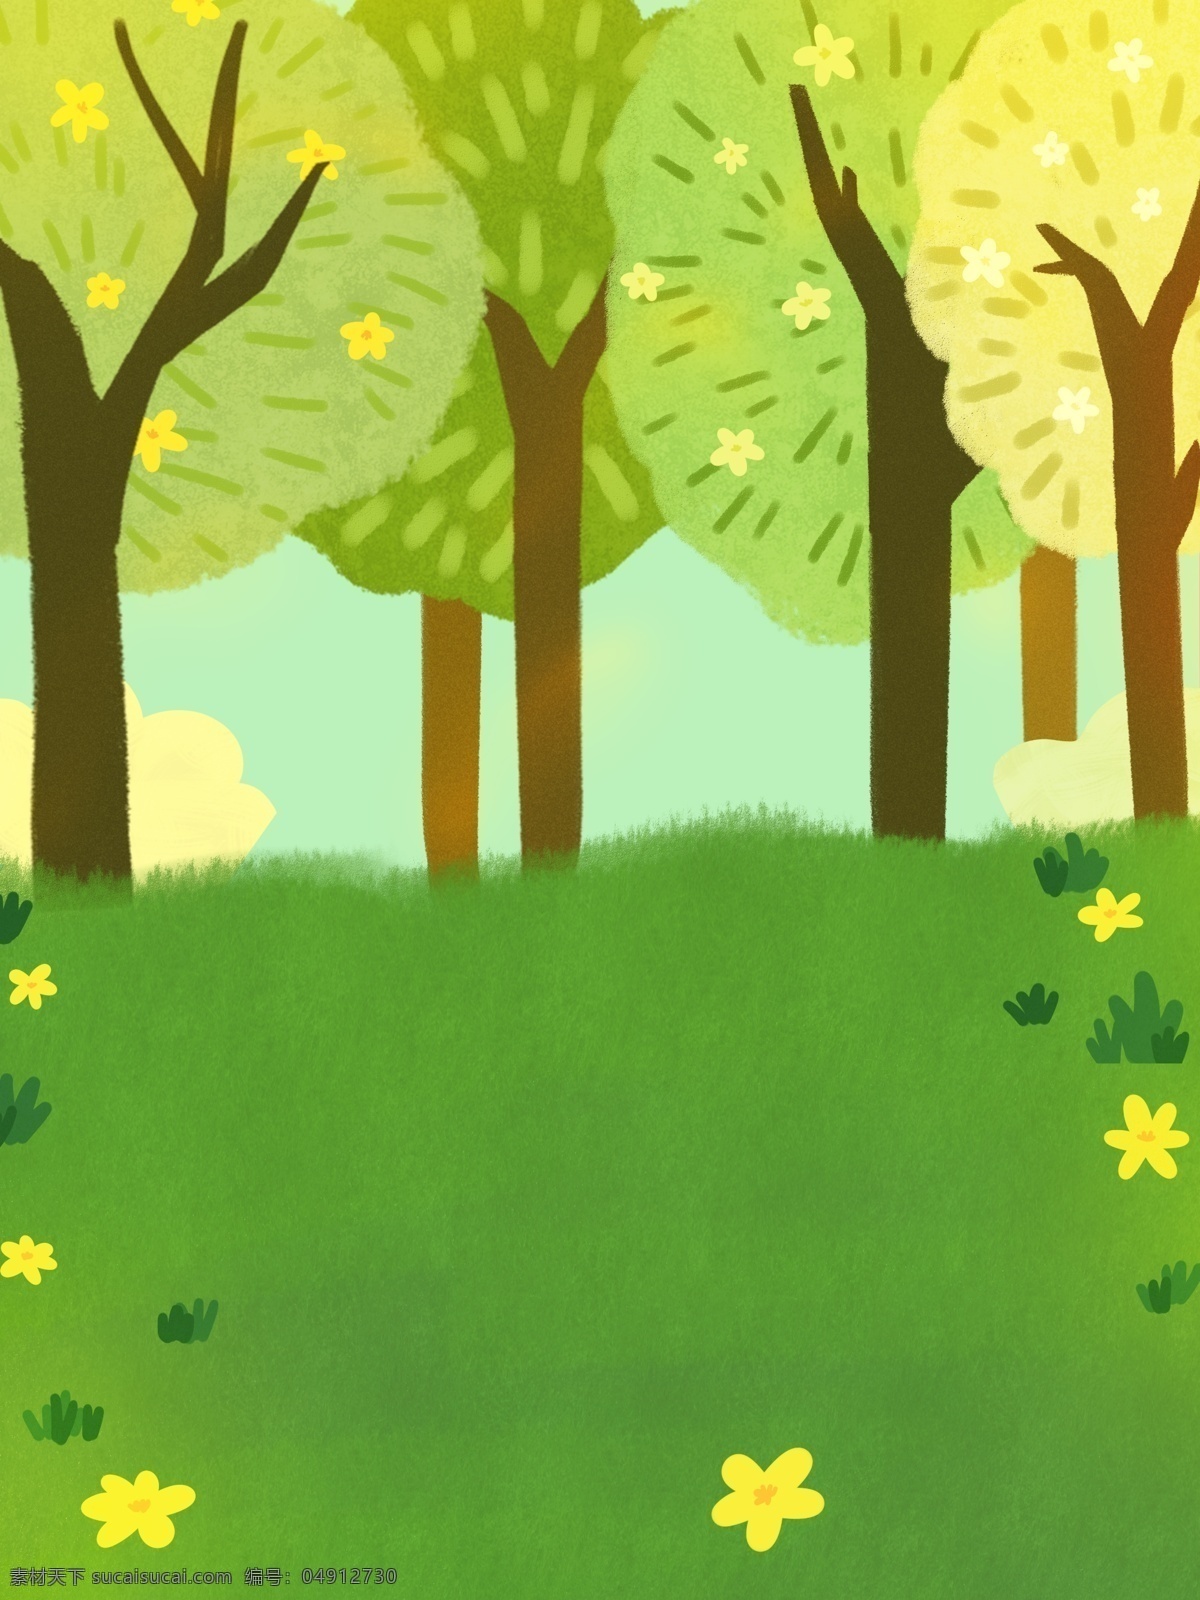 世界 青年 日 卡通 树林 插画 背景 绿色背景 唯美背景 森林背景 广告背景 背景素材 树林背景 植物背景 世界青年日